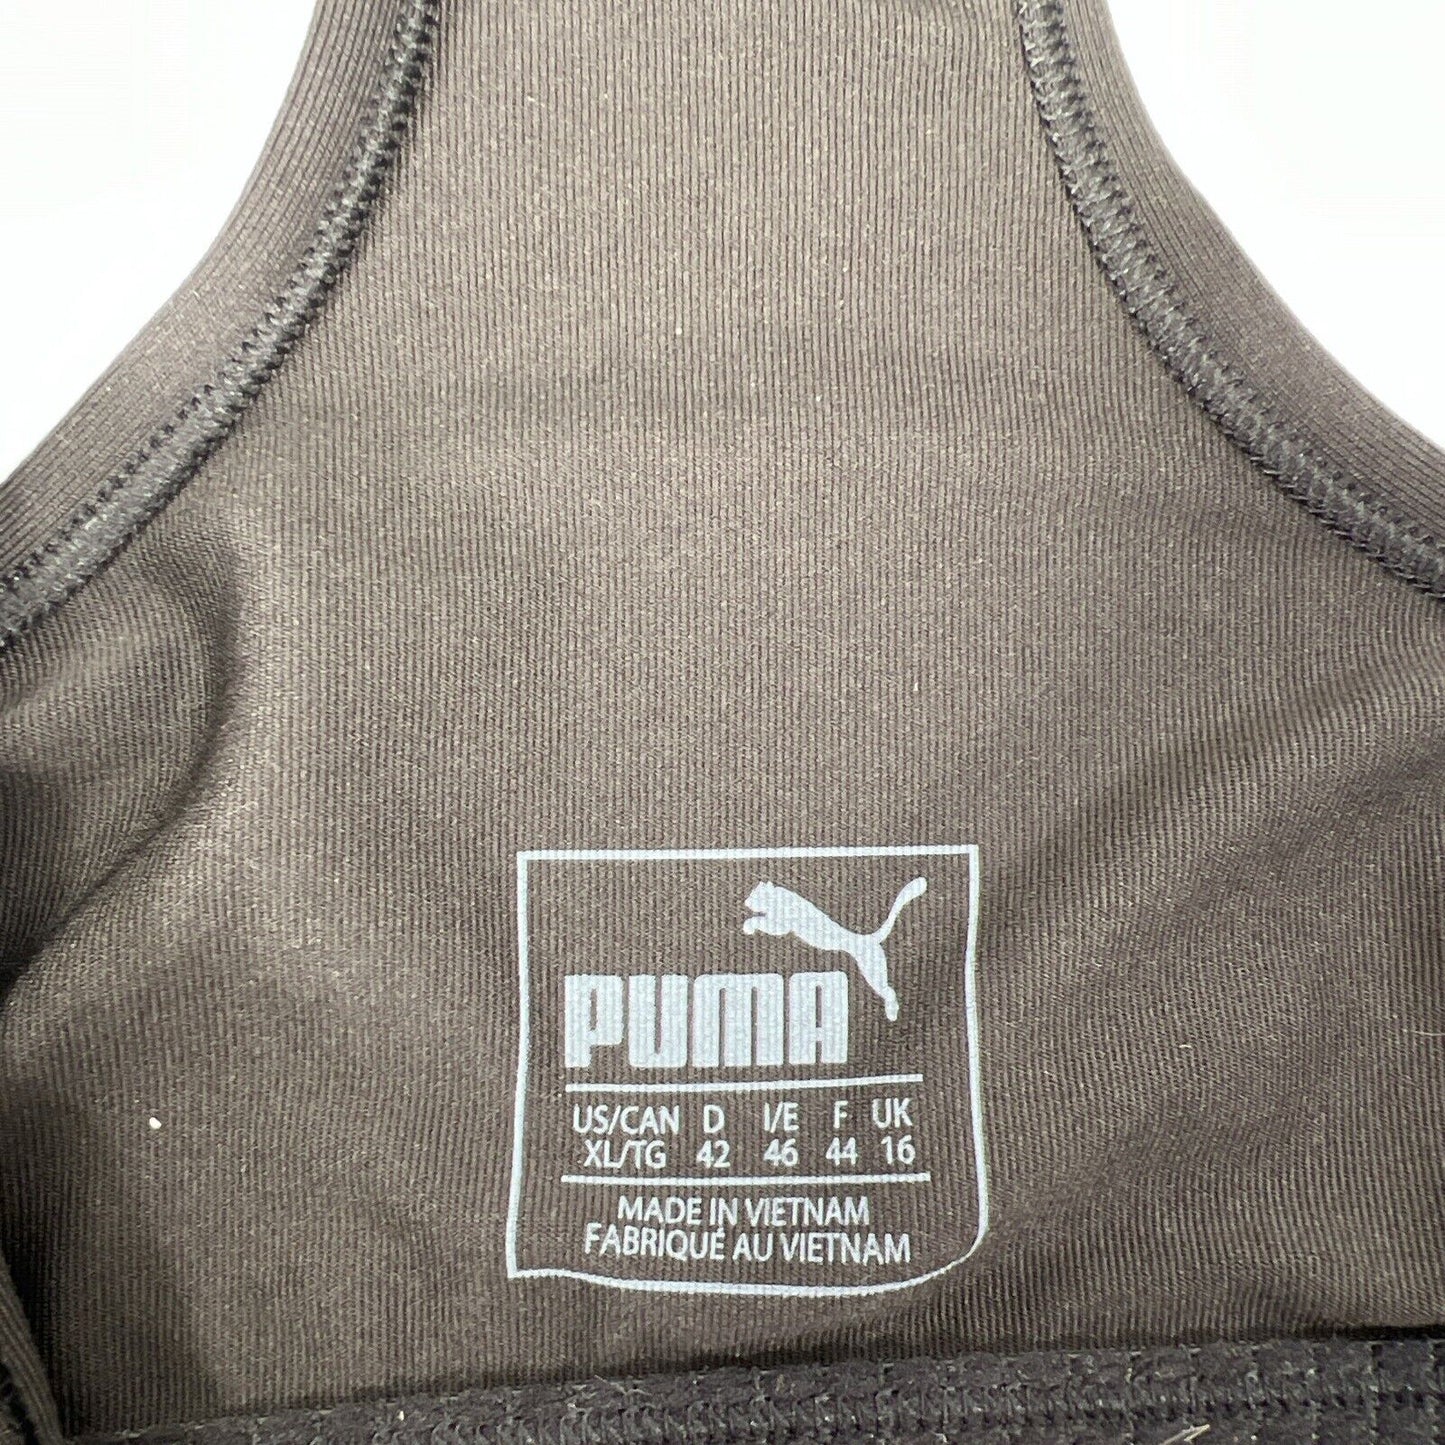 Nuevo sujetador deportivo de entrenamiento Puma Shapewear negro para mujer - XL